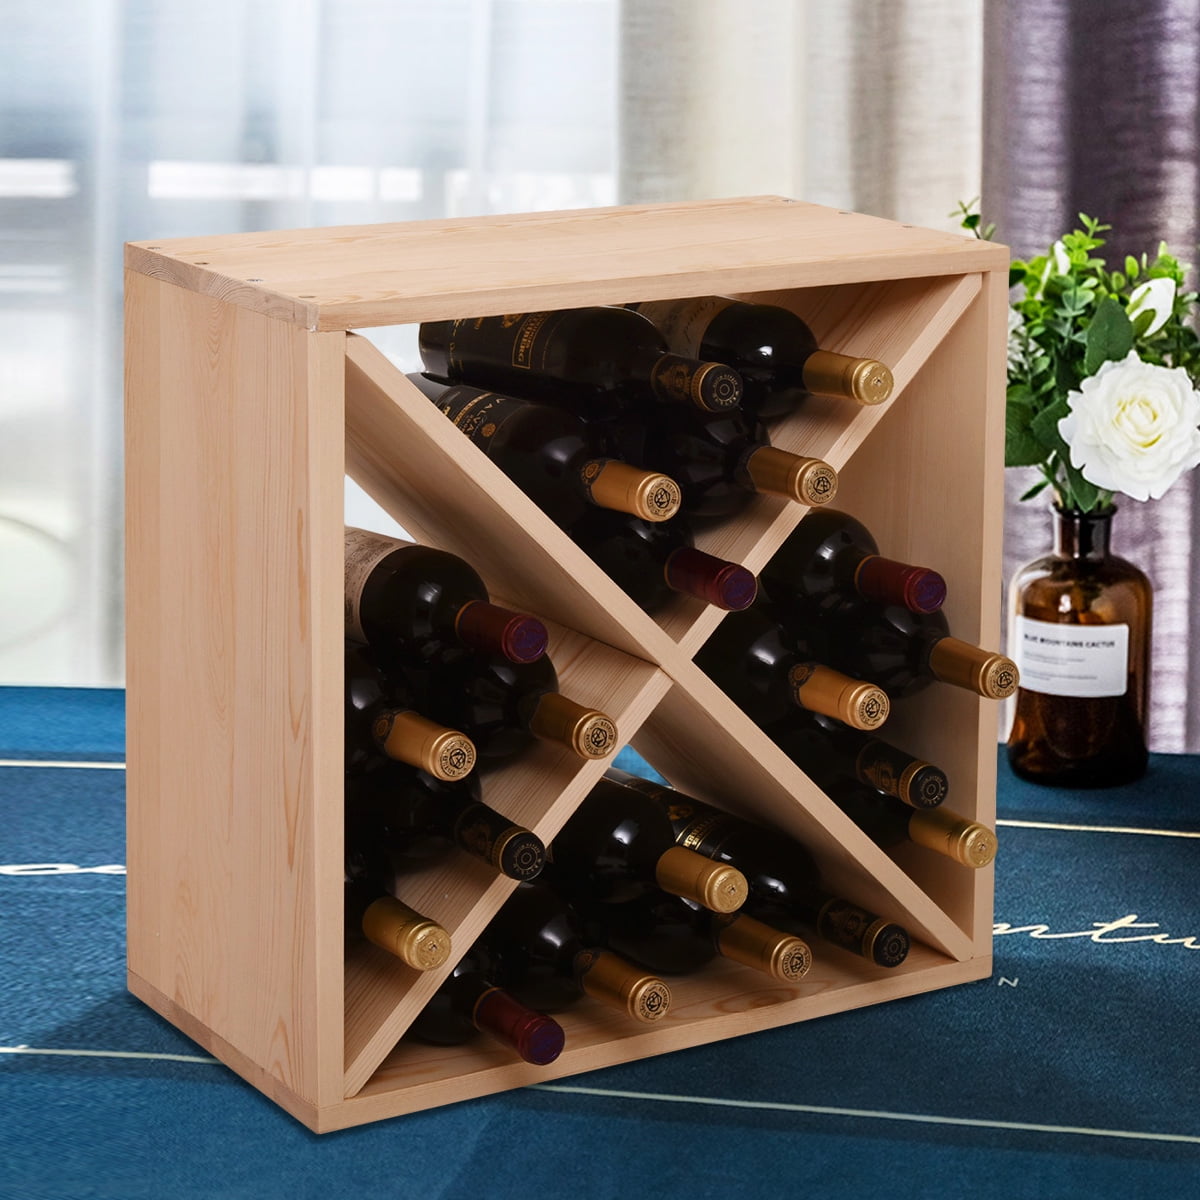 MGP Oak Wine Storage & Display Cube Bin 20”H x 20 L x 8 D 